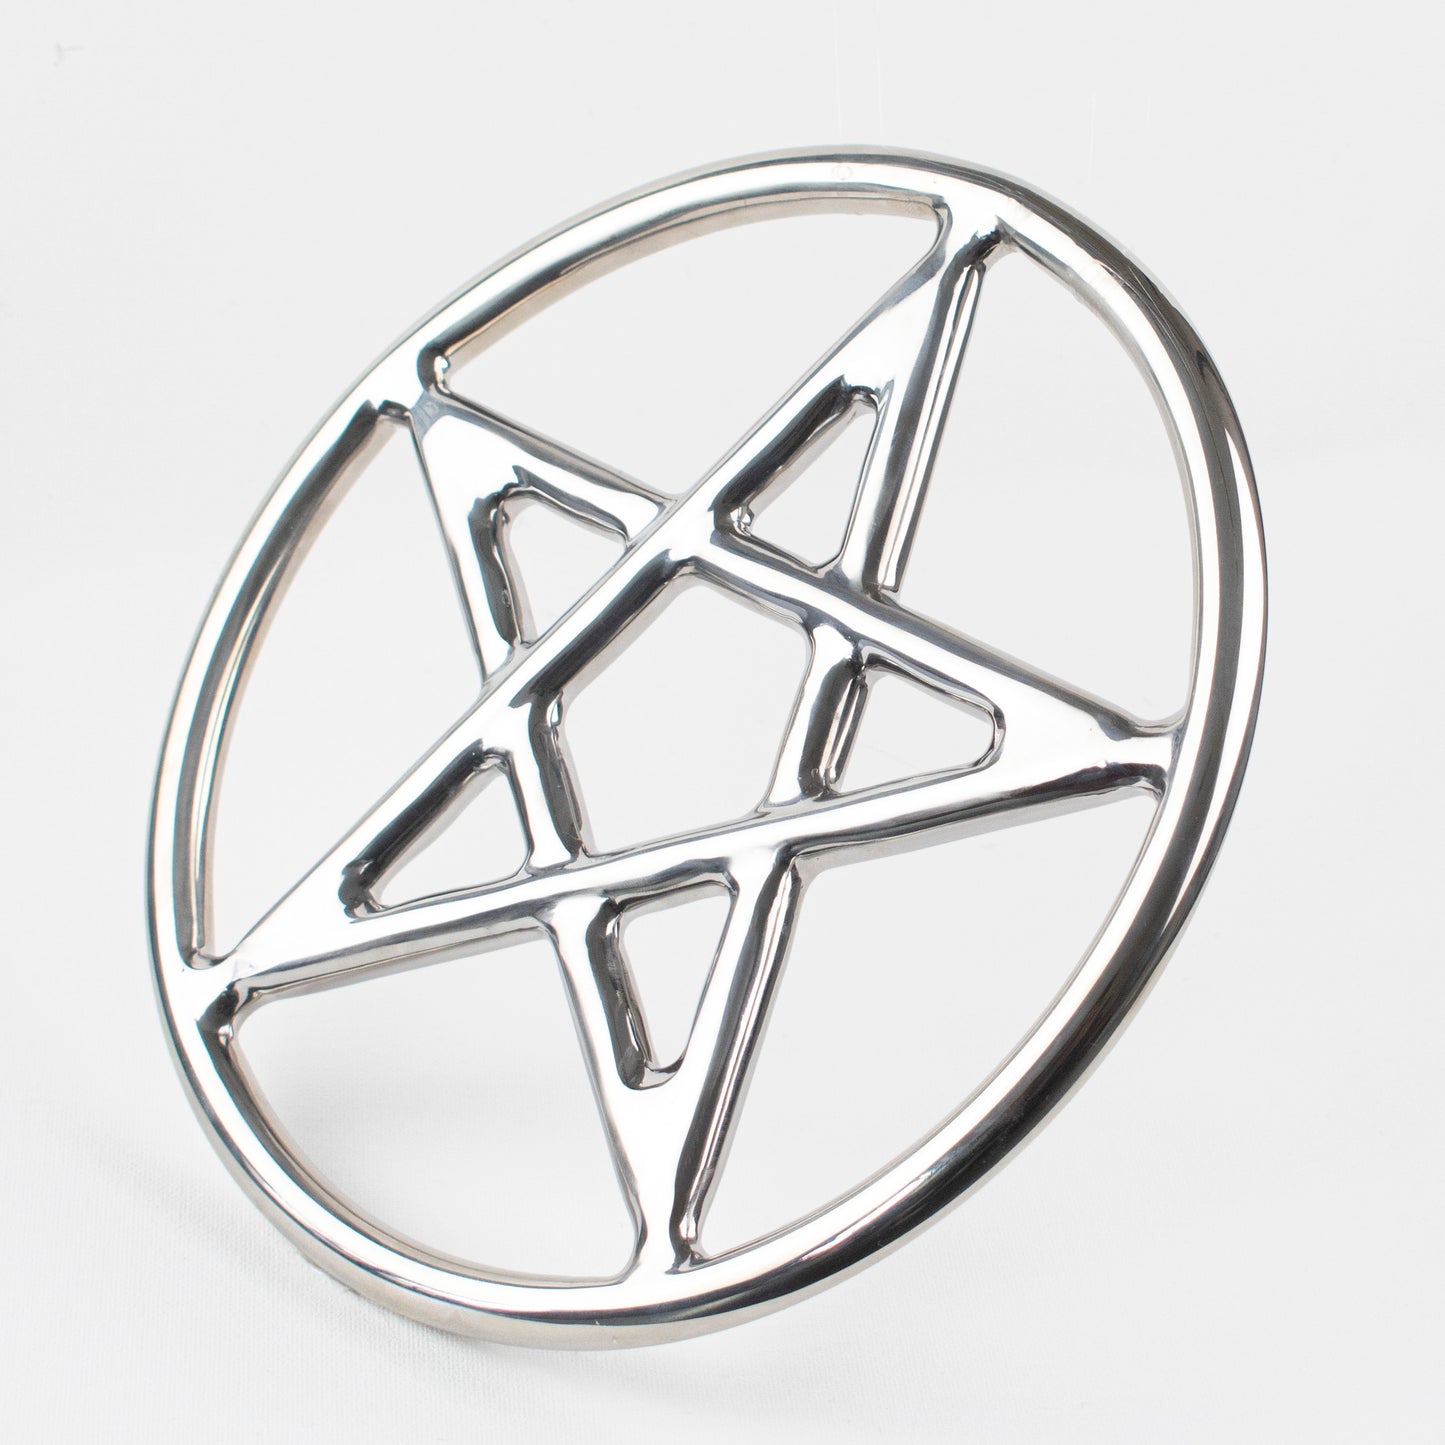 Polish Pentagram Ring - Pentacle